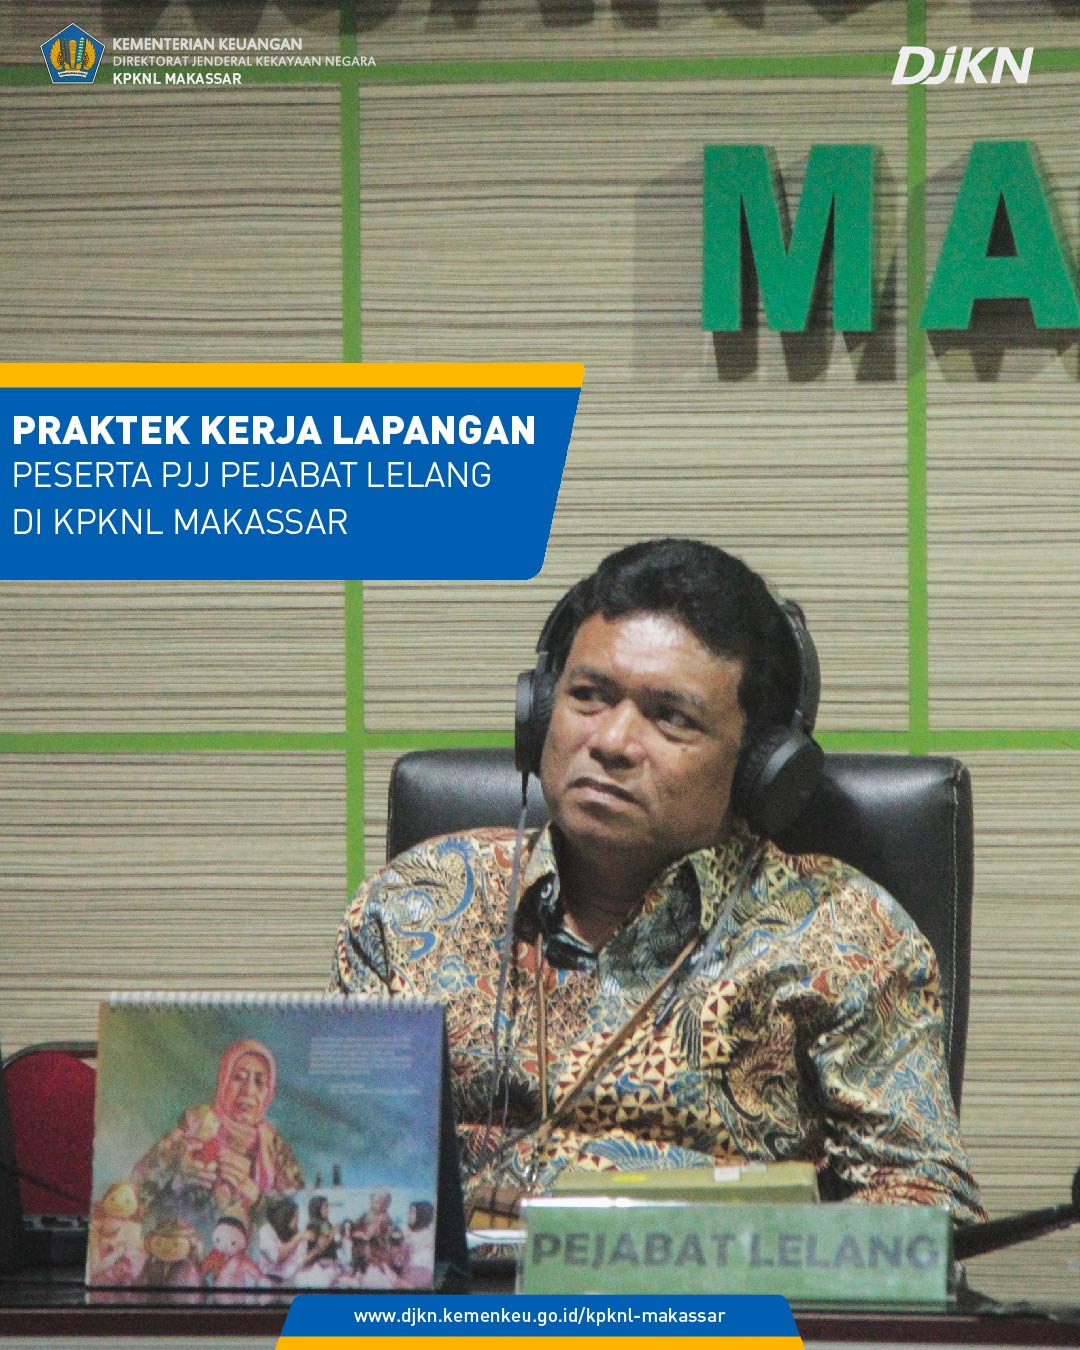 Sinergi Antara BDK Makassar dan KPKNL Makassar dalam Pelaksanaan Praktik Kerja Lapangan PJJ Pejabat Lelang DJKN